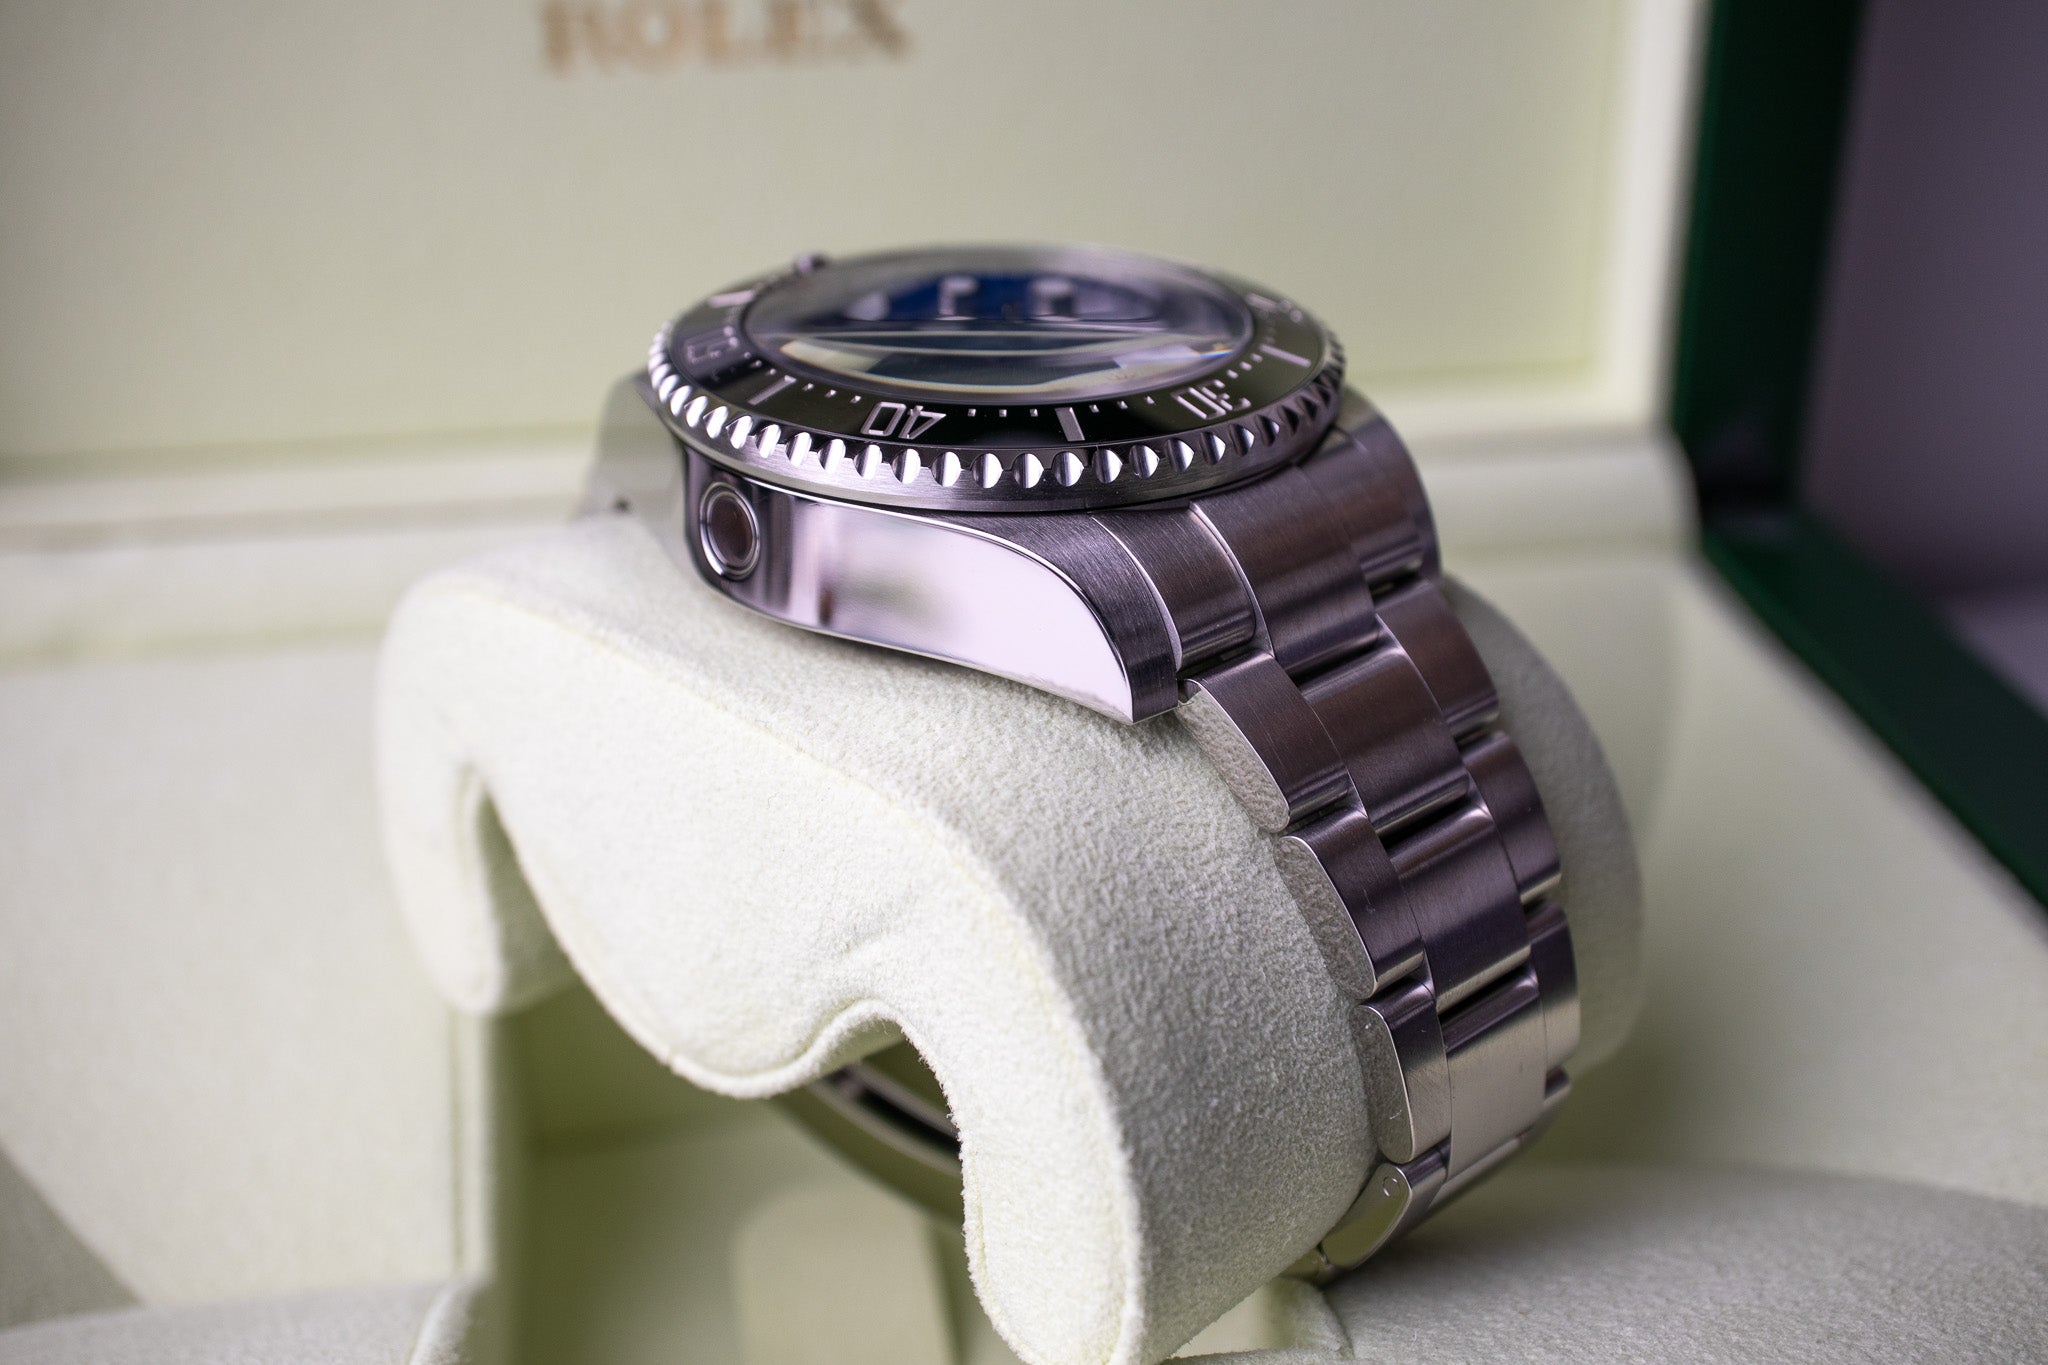 Rolex Deepsea Sea-Dweller 116660 James Cameron